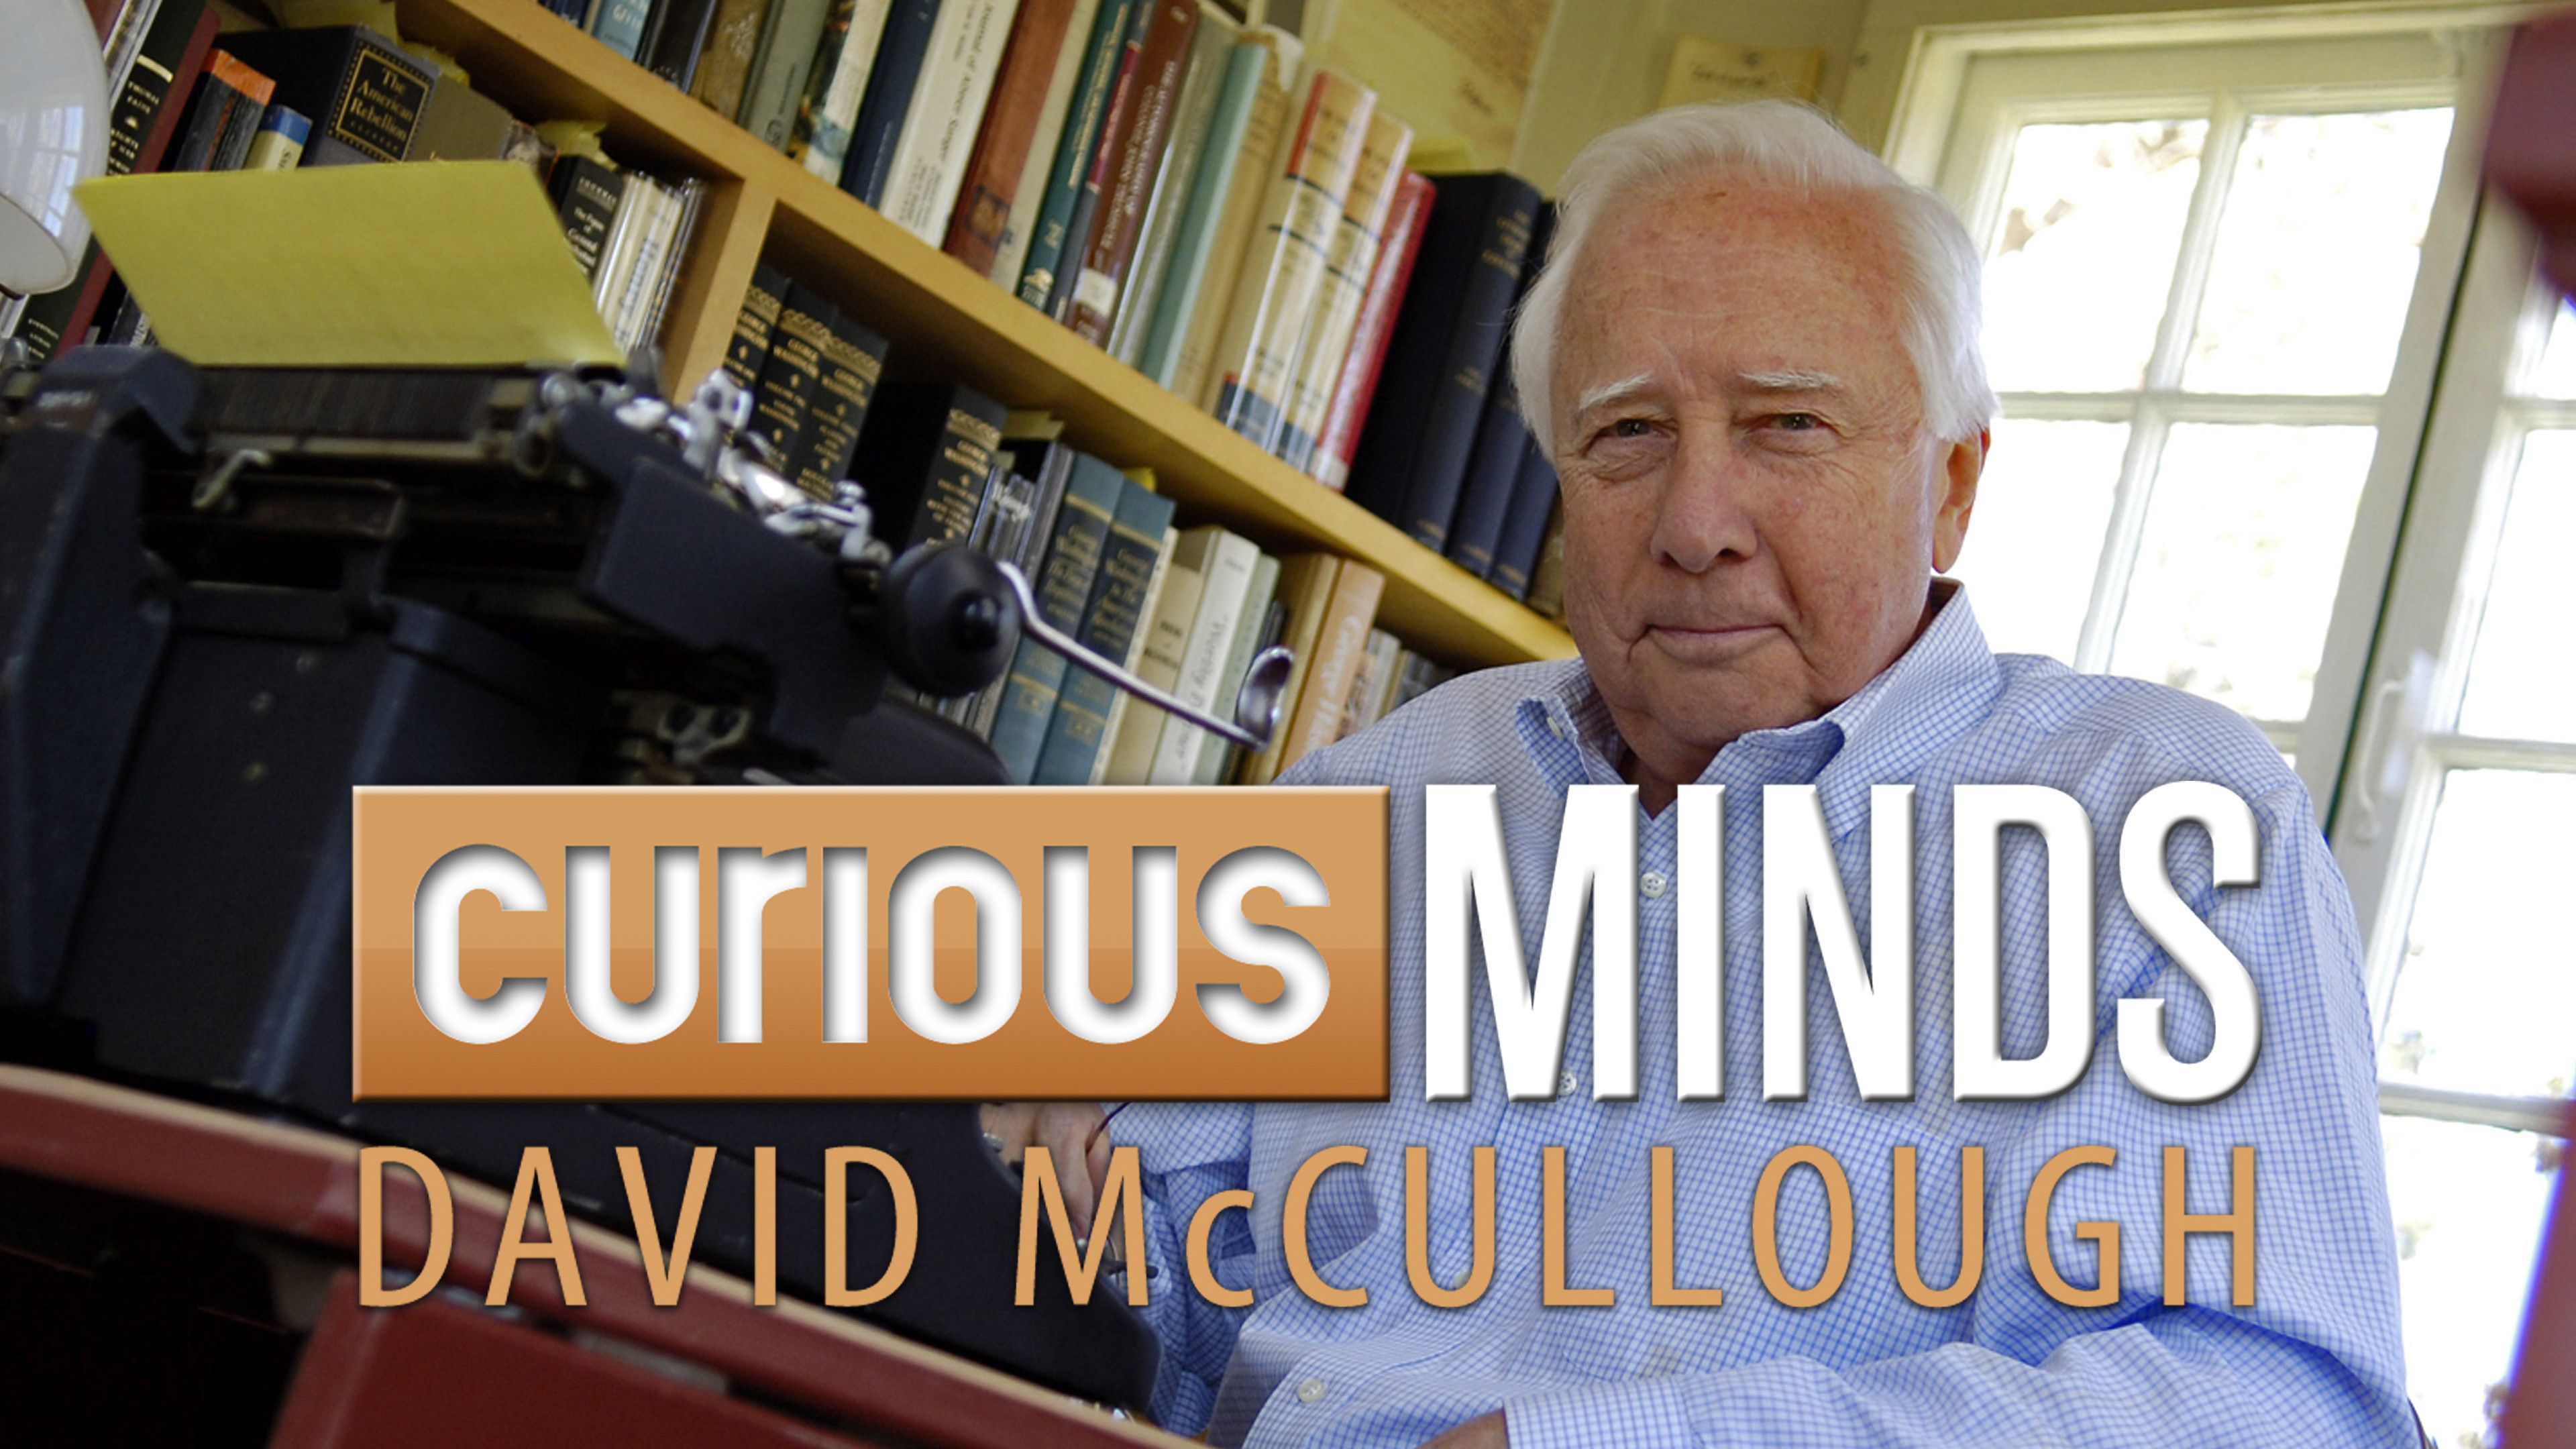 Curious Minds: David McCullough